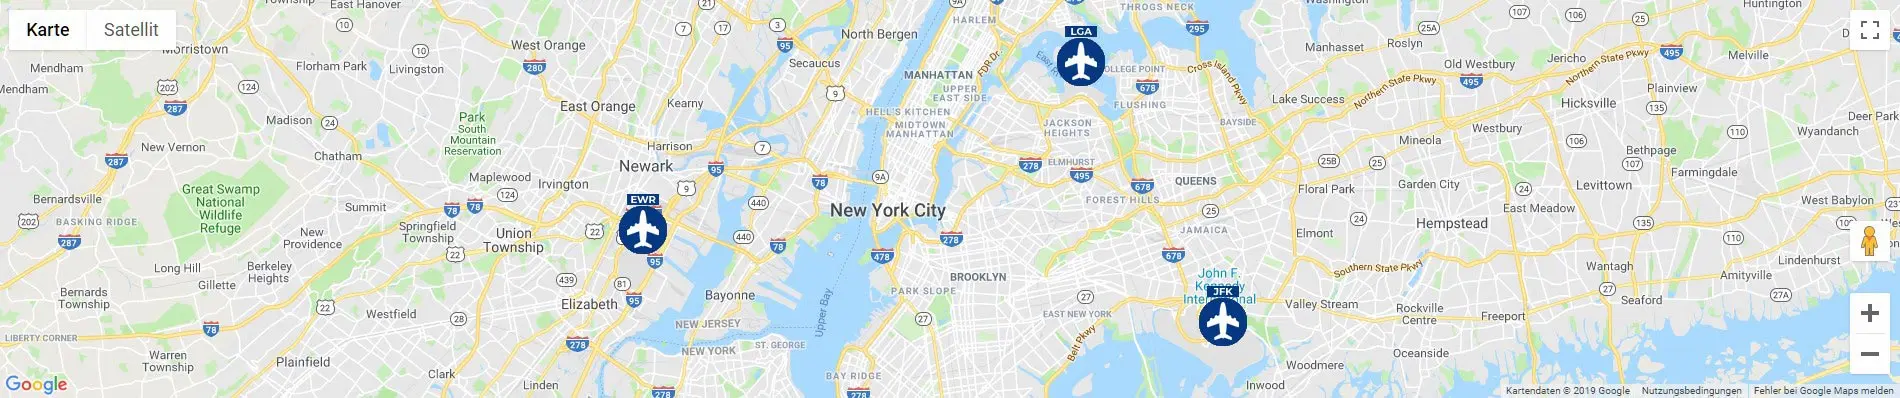 New York Karte mit den 3 Flughäfen JFK, EWR und LGA